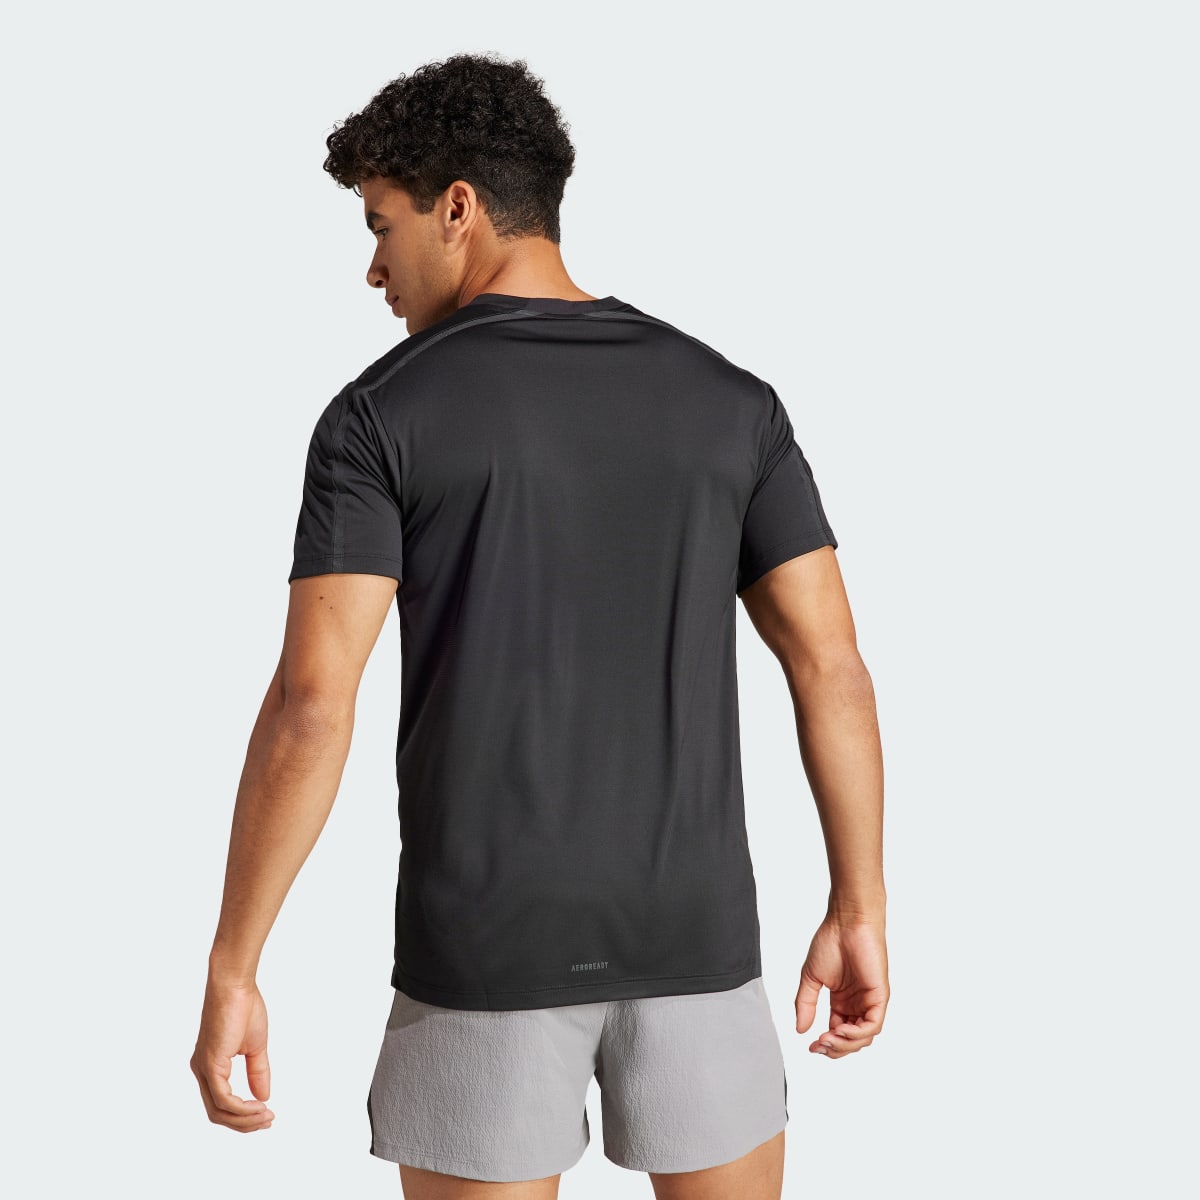 Adidas Camiseta Designed for Training Adistrong Workout. 4